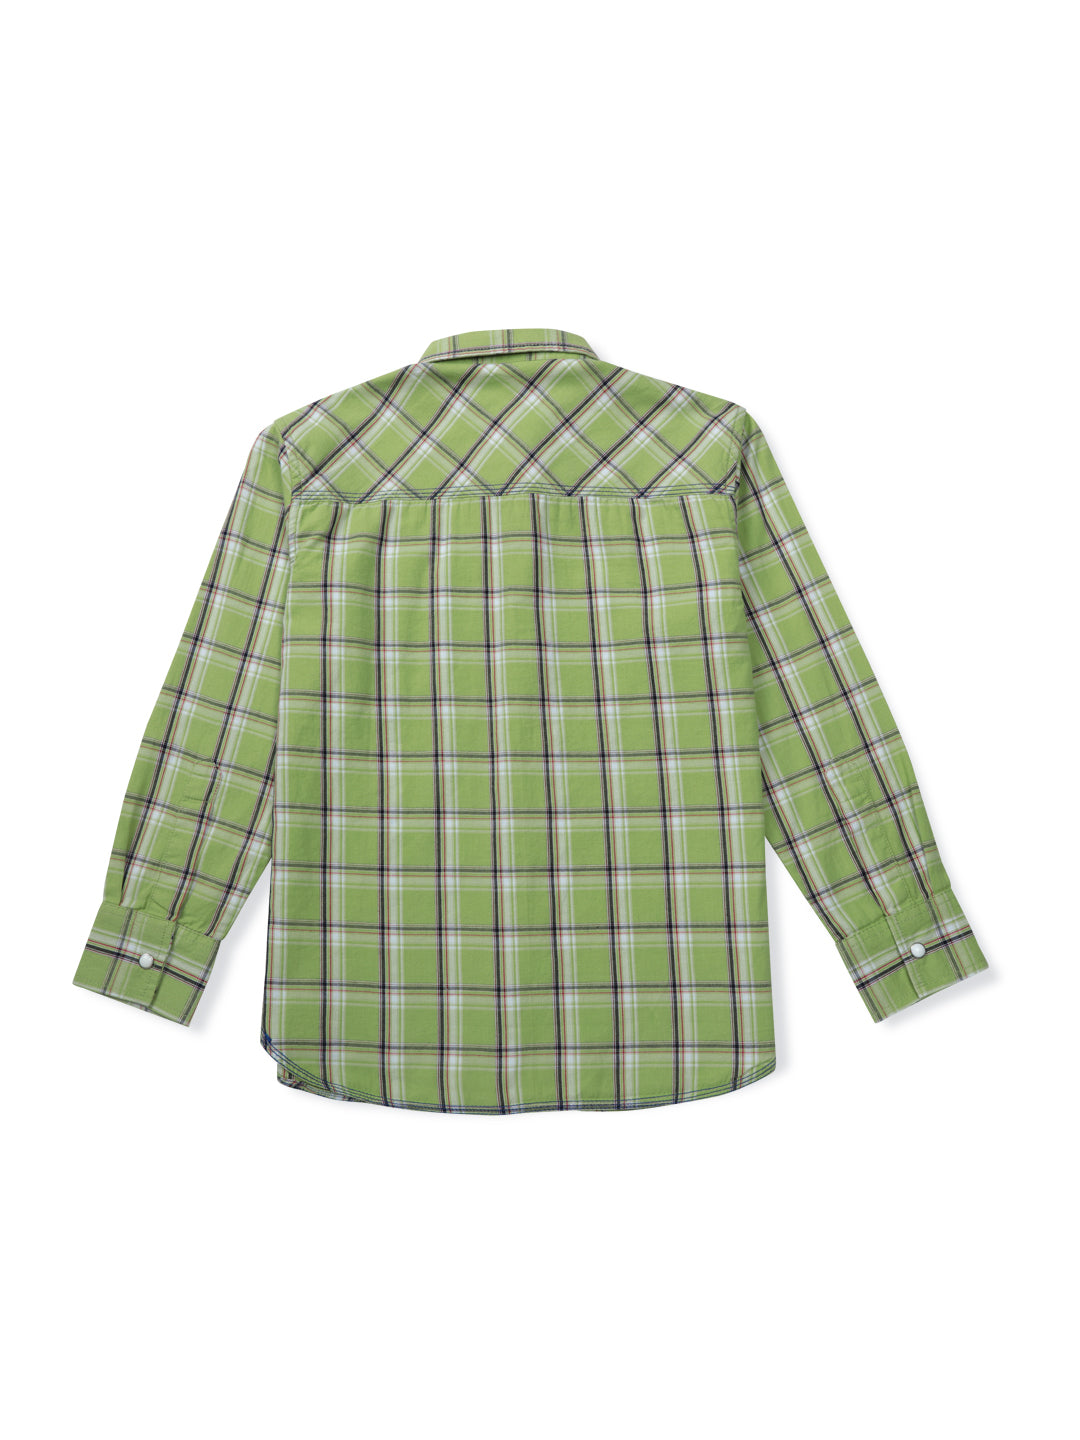 Boys Green Checks Woven Shirt